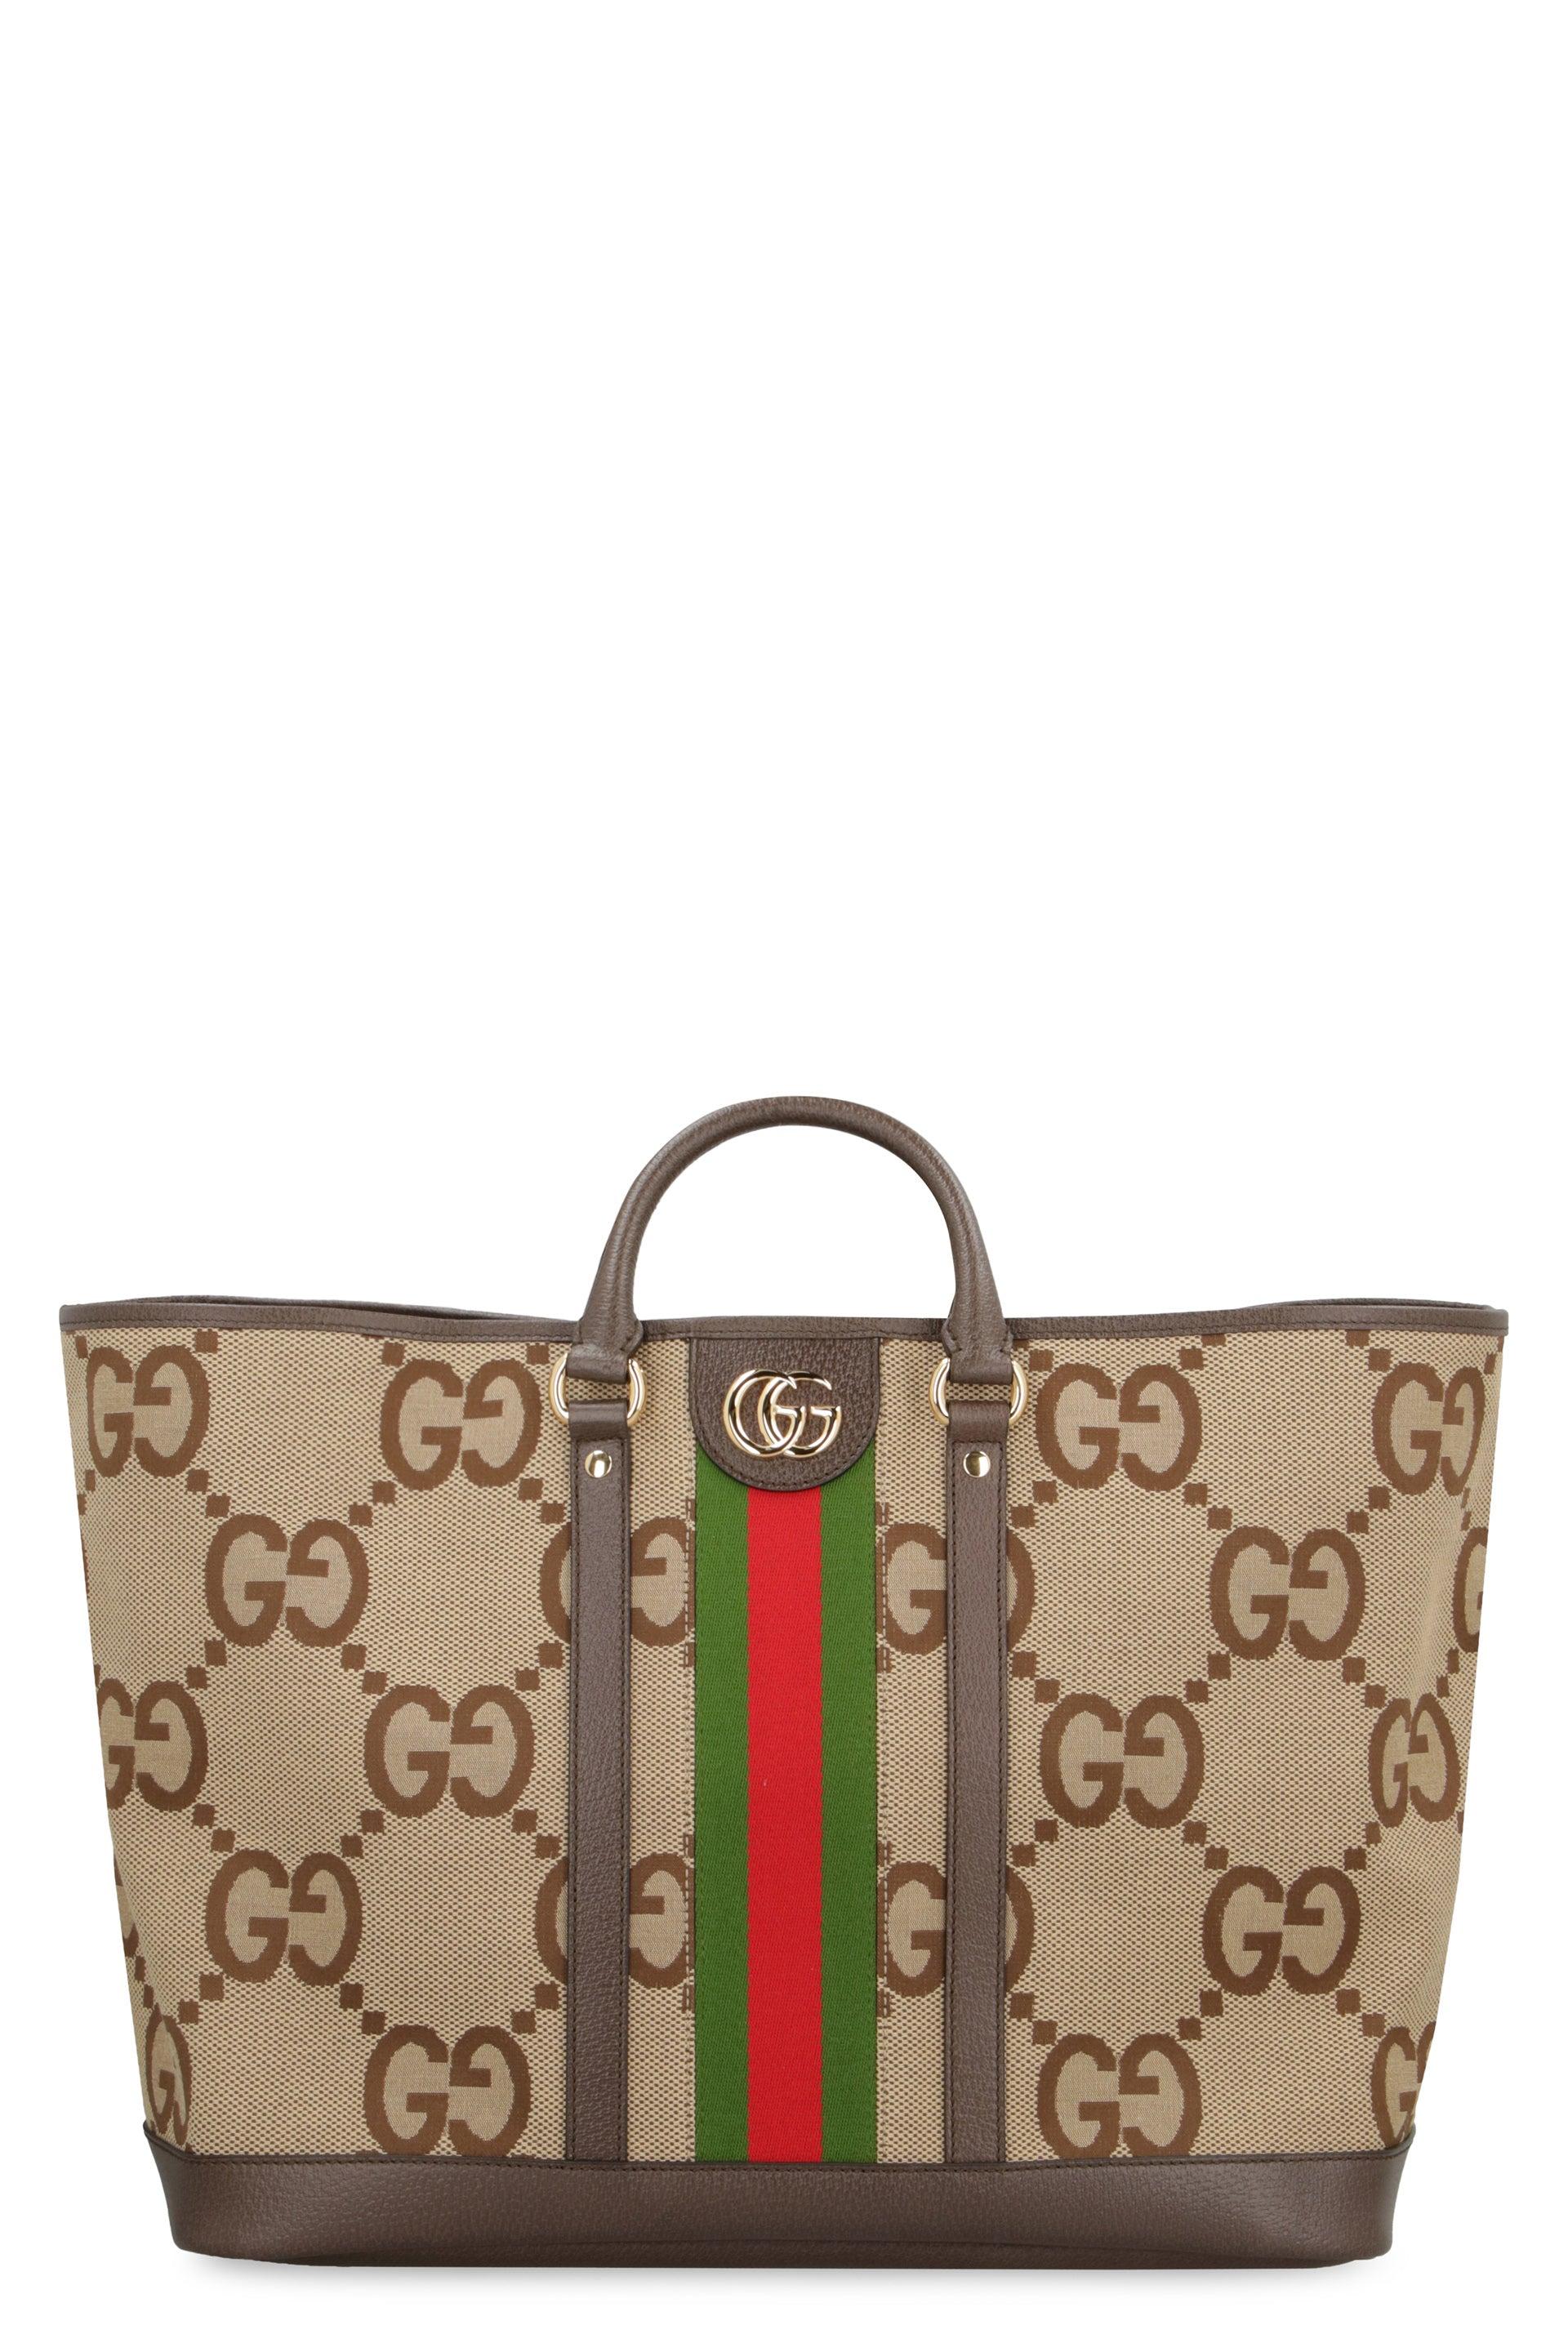 Gucci Jumbo GG Large Tote Bag